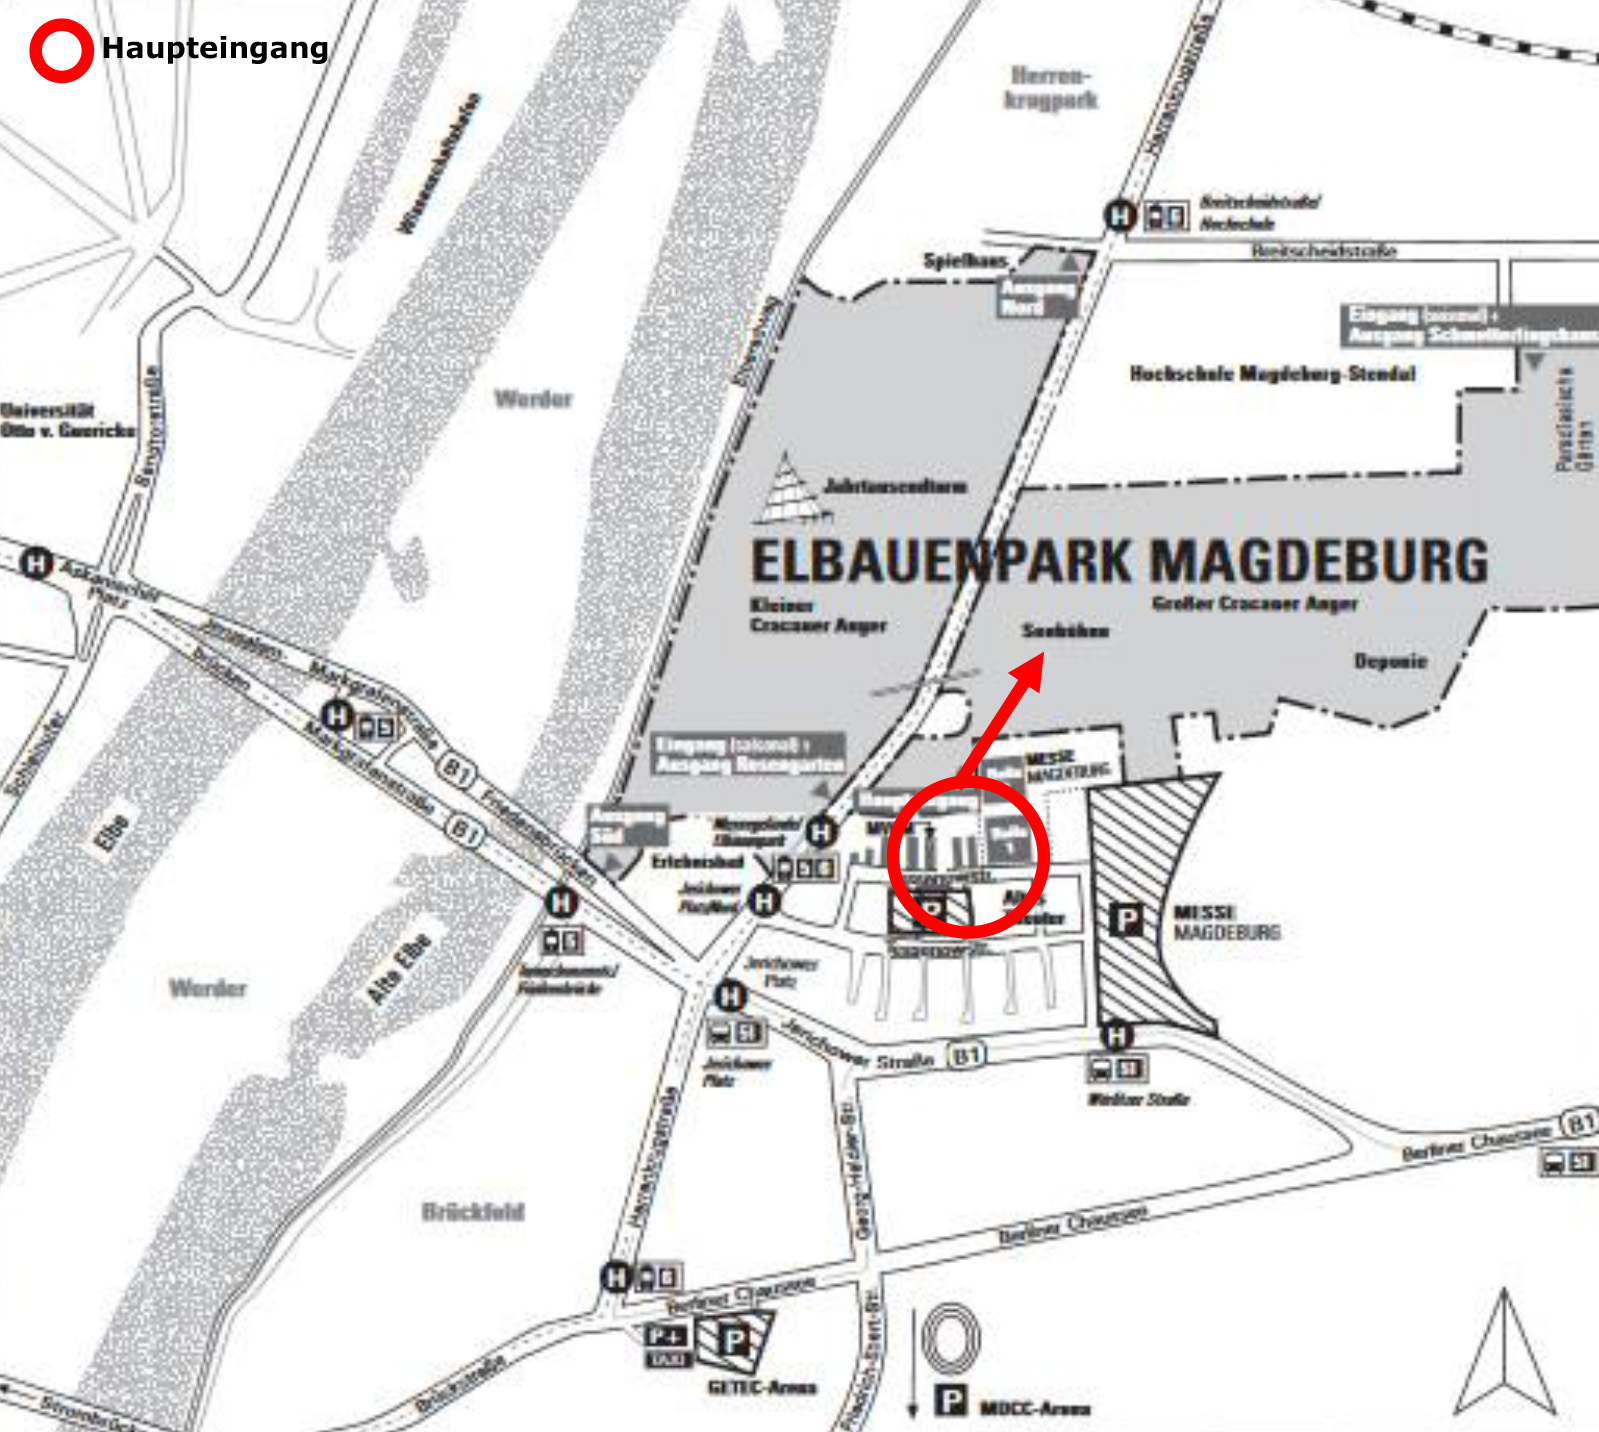 Elbauenpark Magdeburg